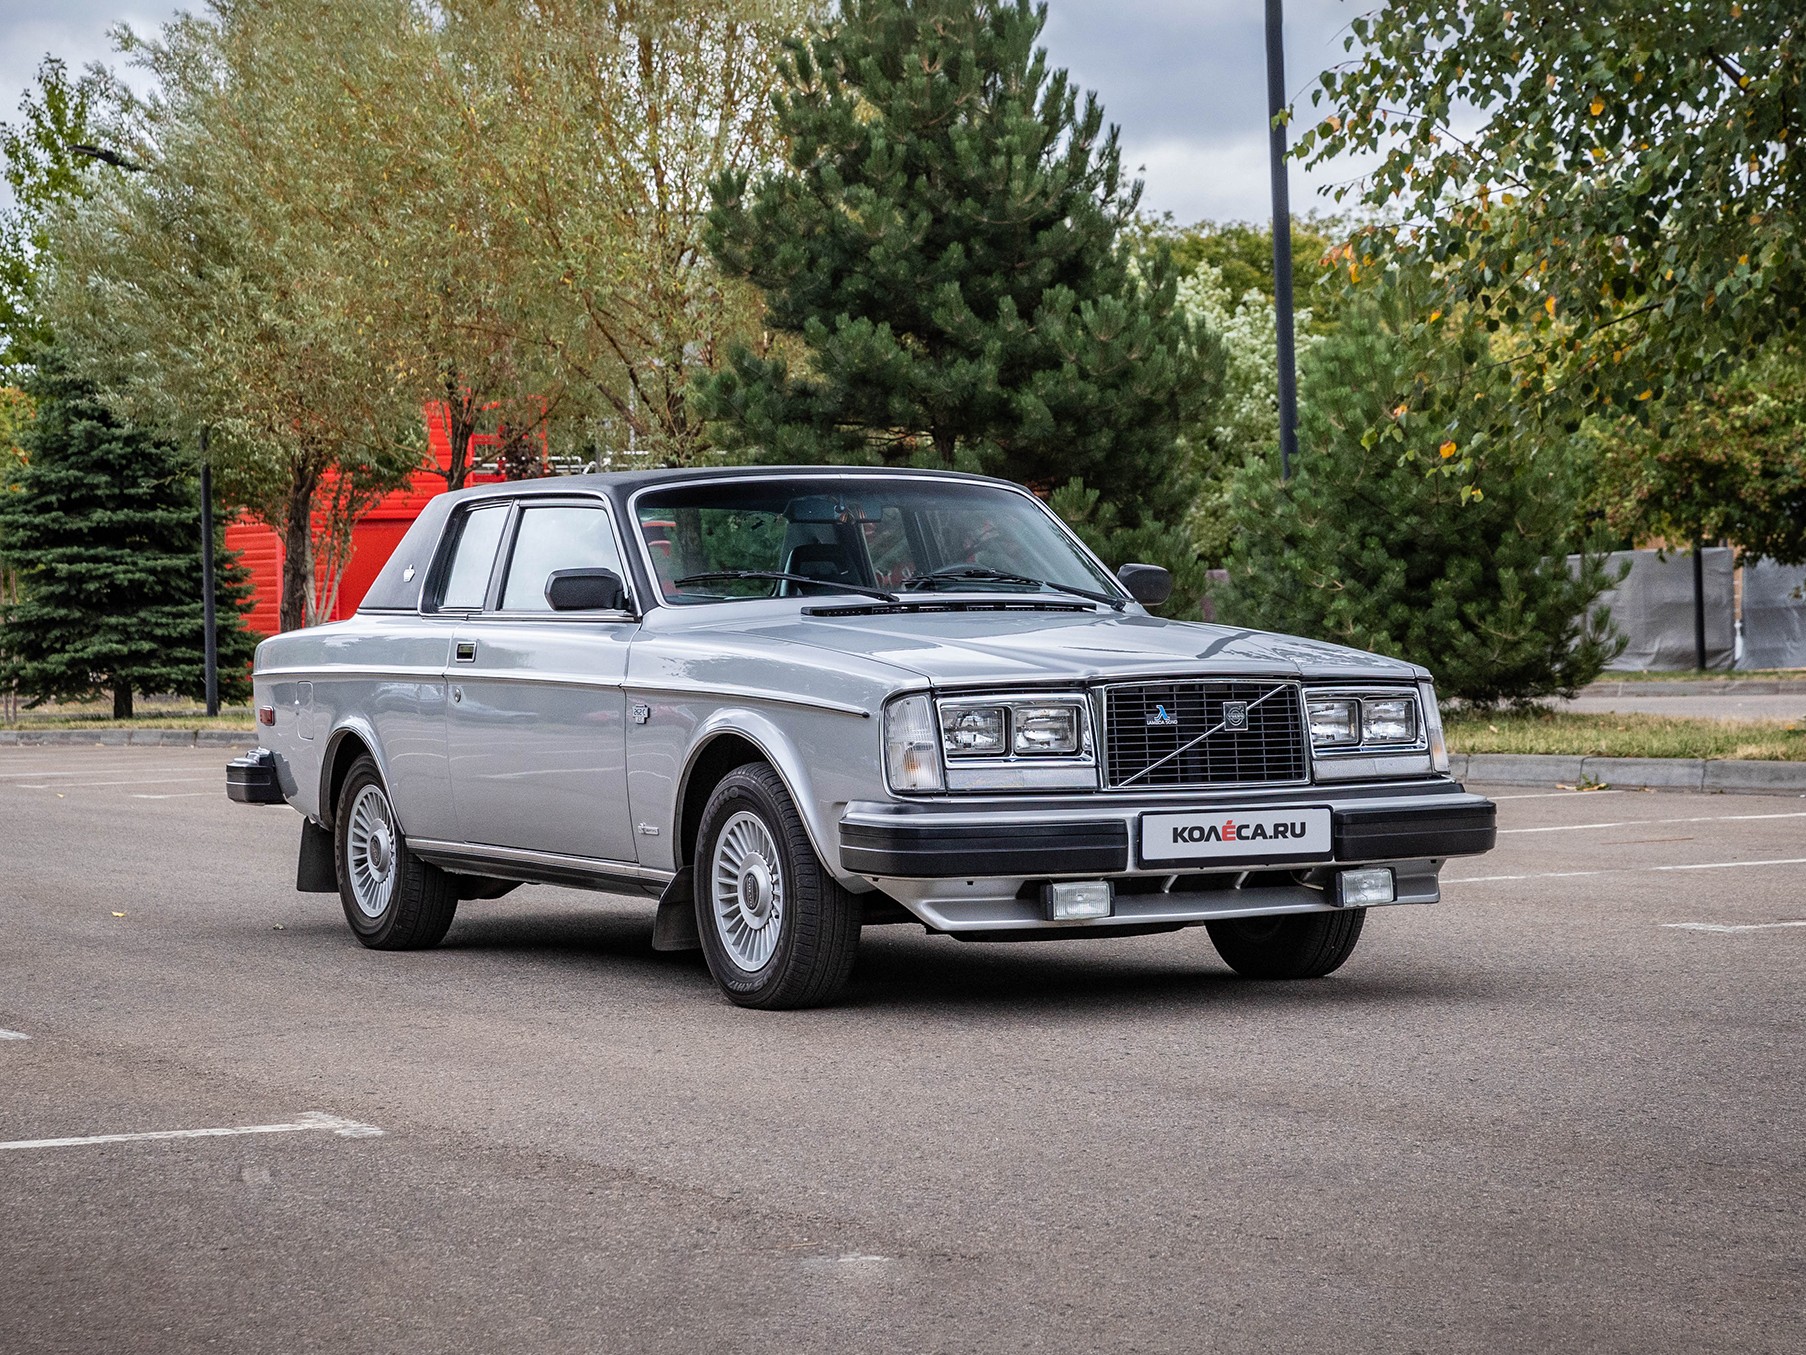 Italiano vero шведского происхождения: опыт владения Volvo 262С 1979 года